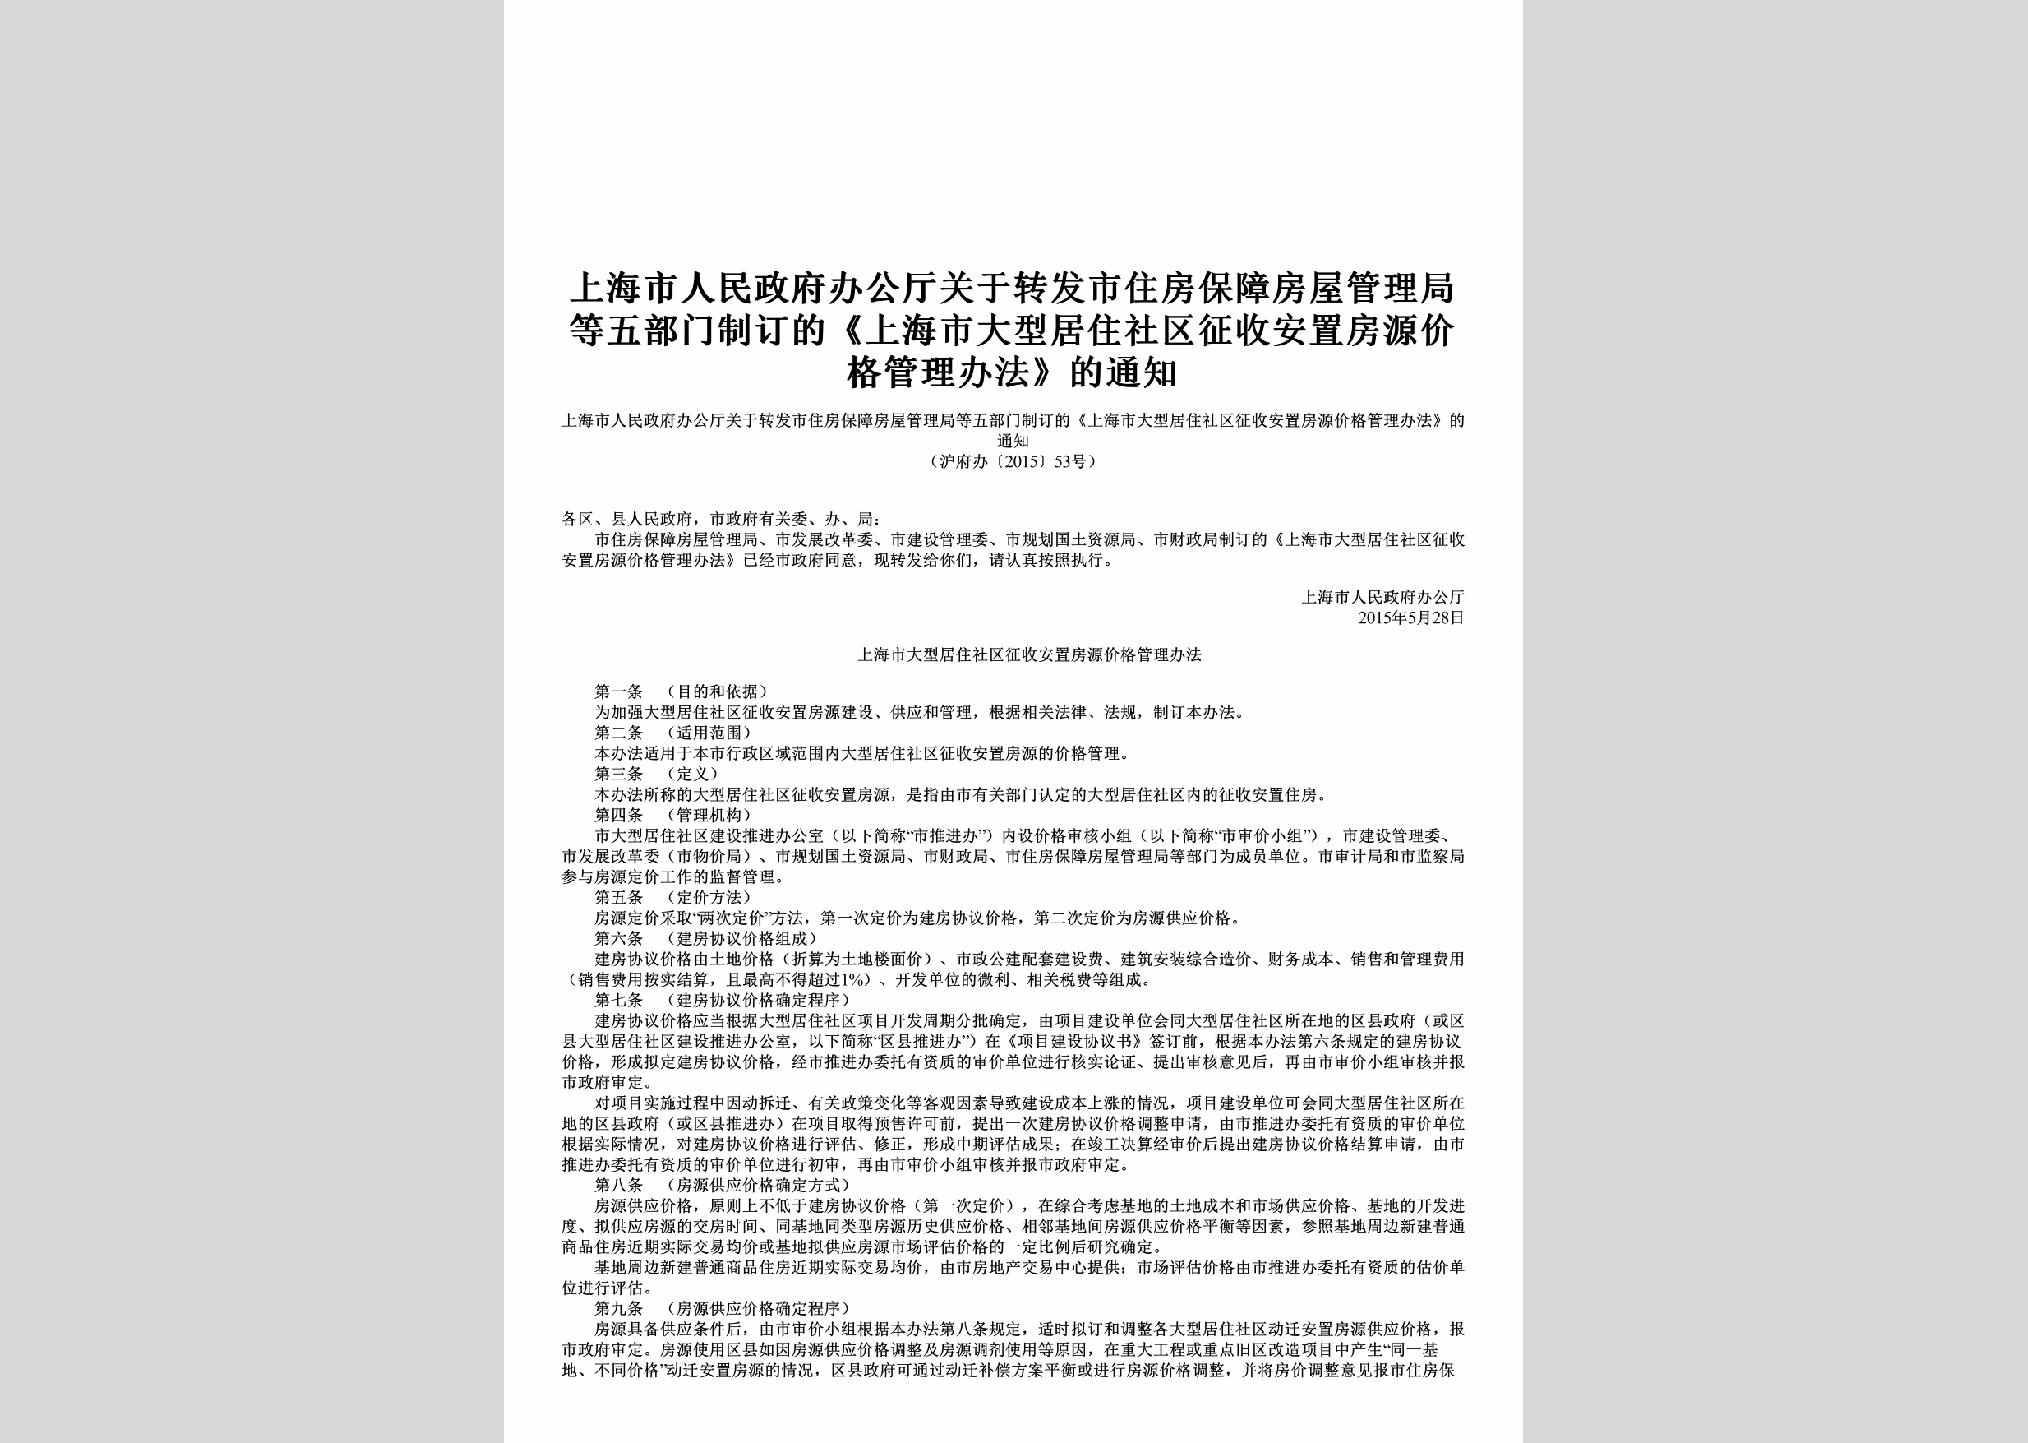 沪府办[2015]53号：关于转发市住房保障房屋管理局等五部门制订的《上海市大型居住社区征收安置房源价格管理办法》的通知